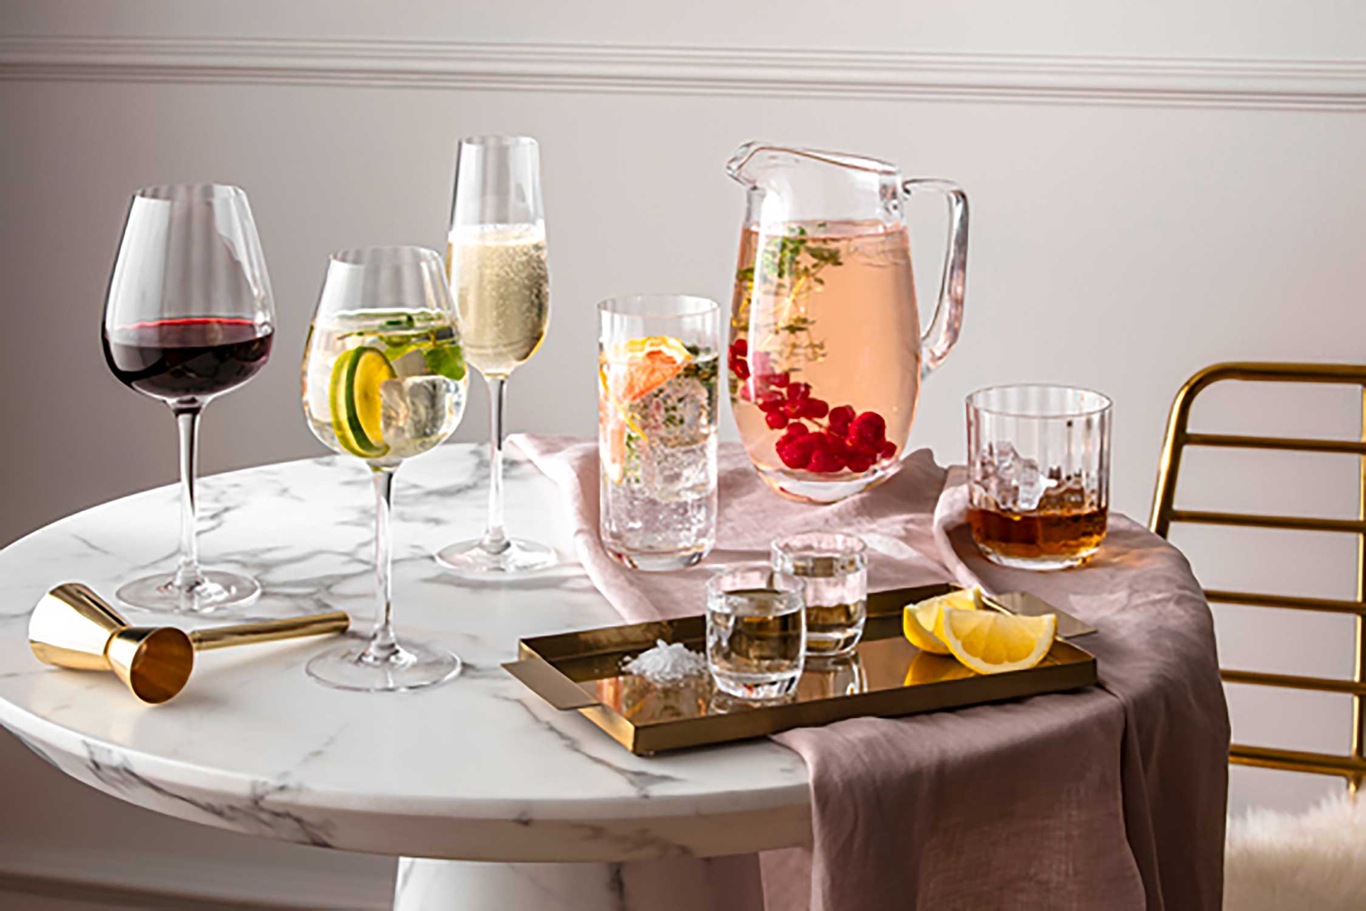 https://royaldesign.com/image/2/villeroy-boch-rose-garden-red-wine-goblet-set-4-pcs-4?w=800&quality=80